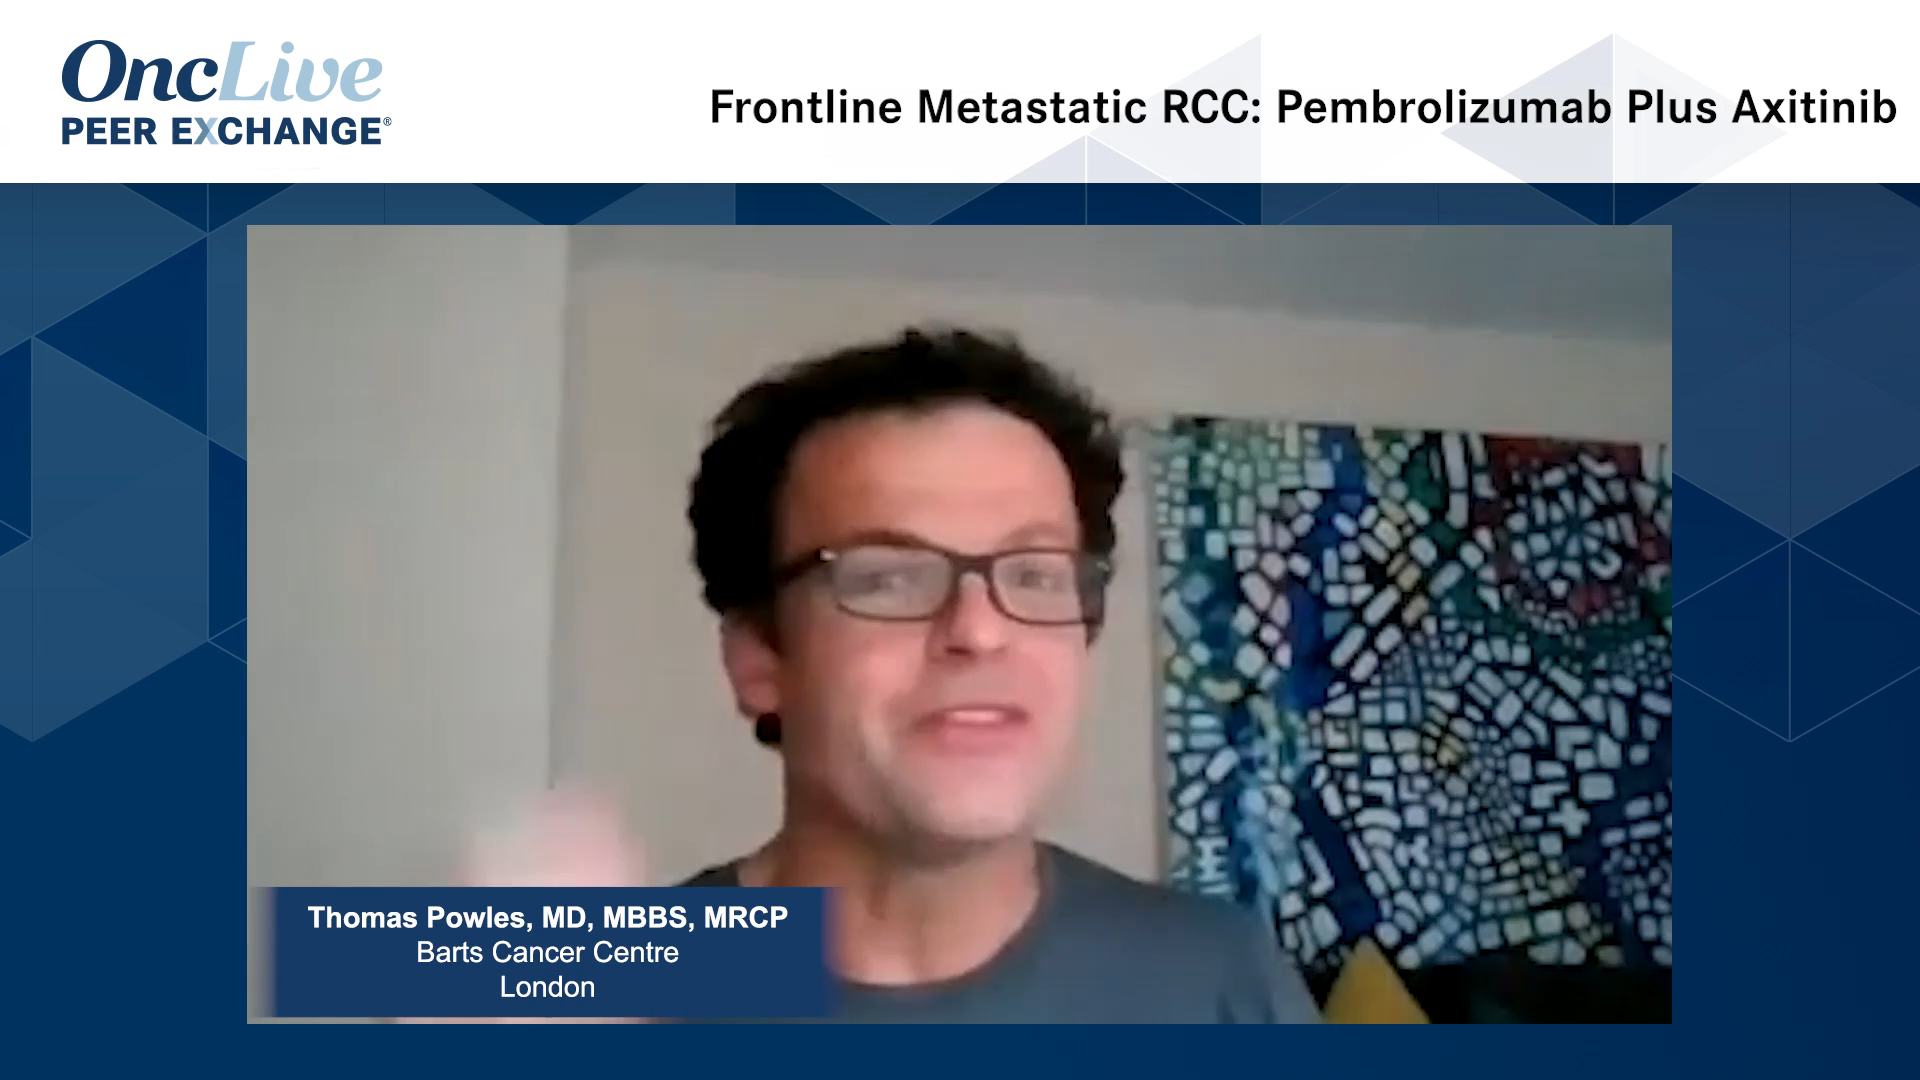 Frontline Metastatic RCC: Pembrolizumab Plus Axitinib